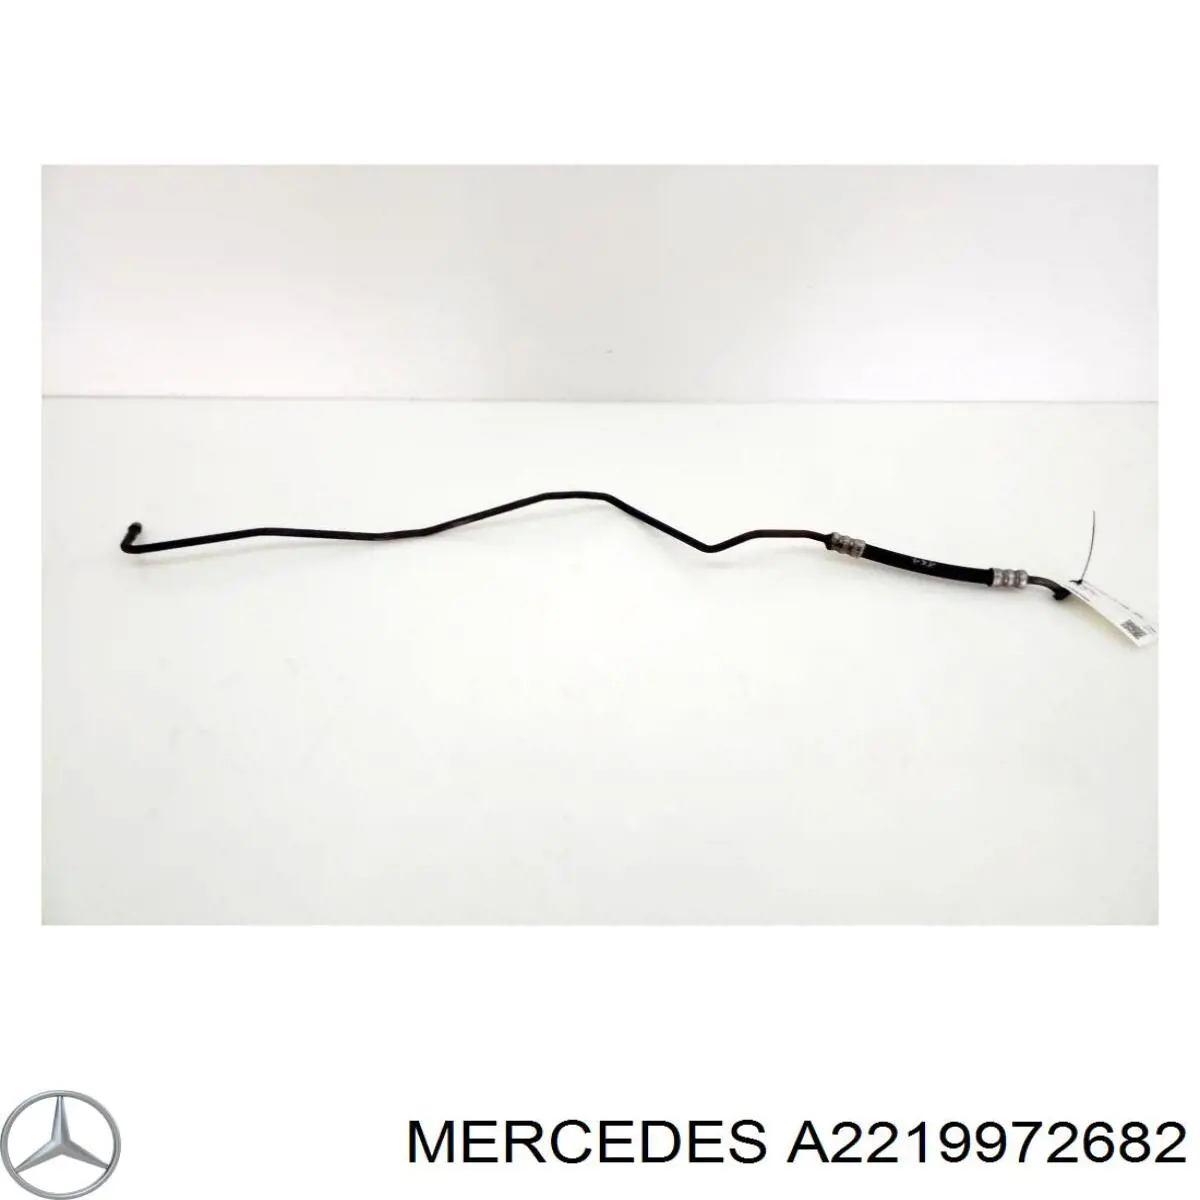 Шланг ГПК, низького тиску, від рейки/механізму до радіатора на Mercedes S-Class (C216)